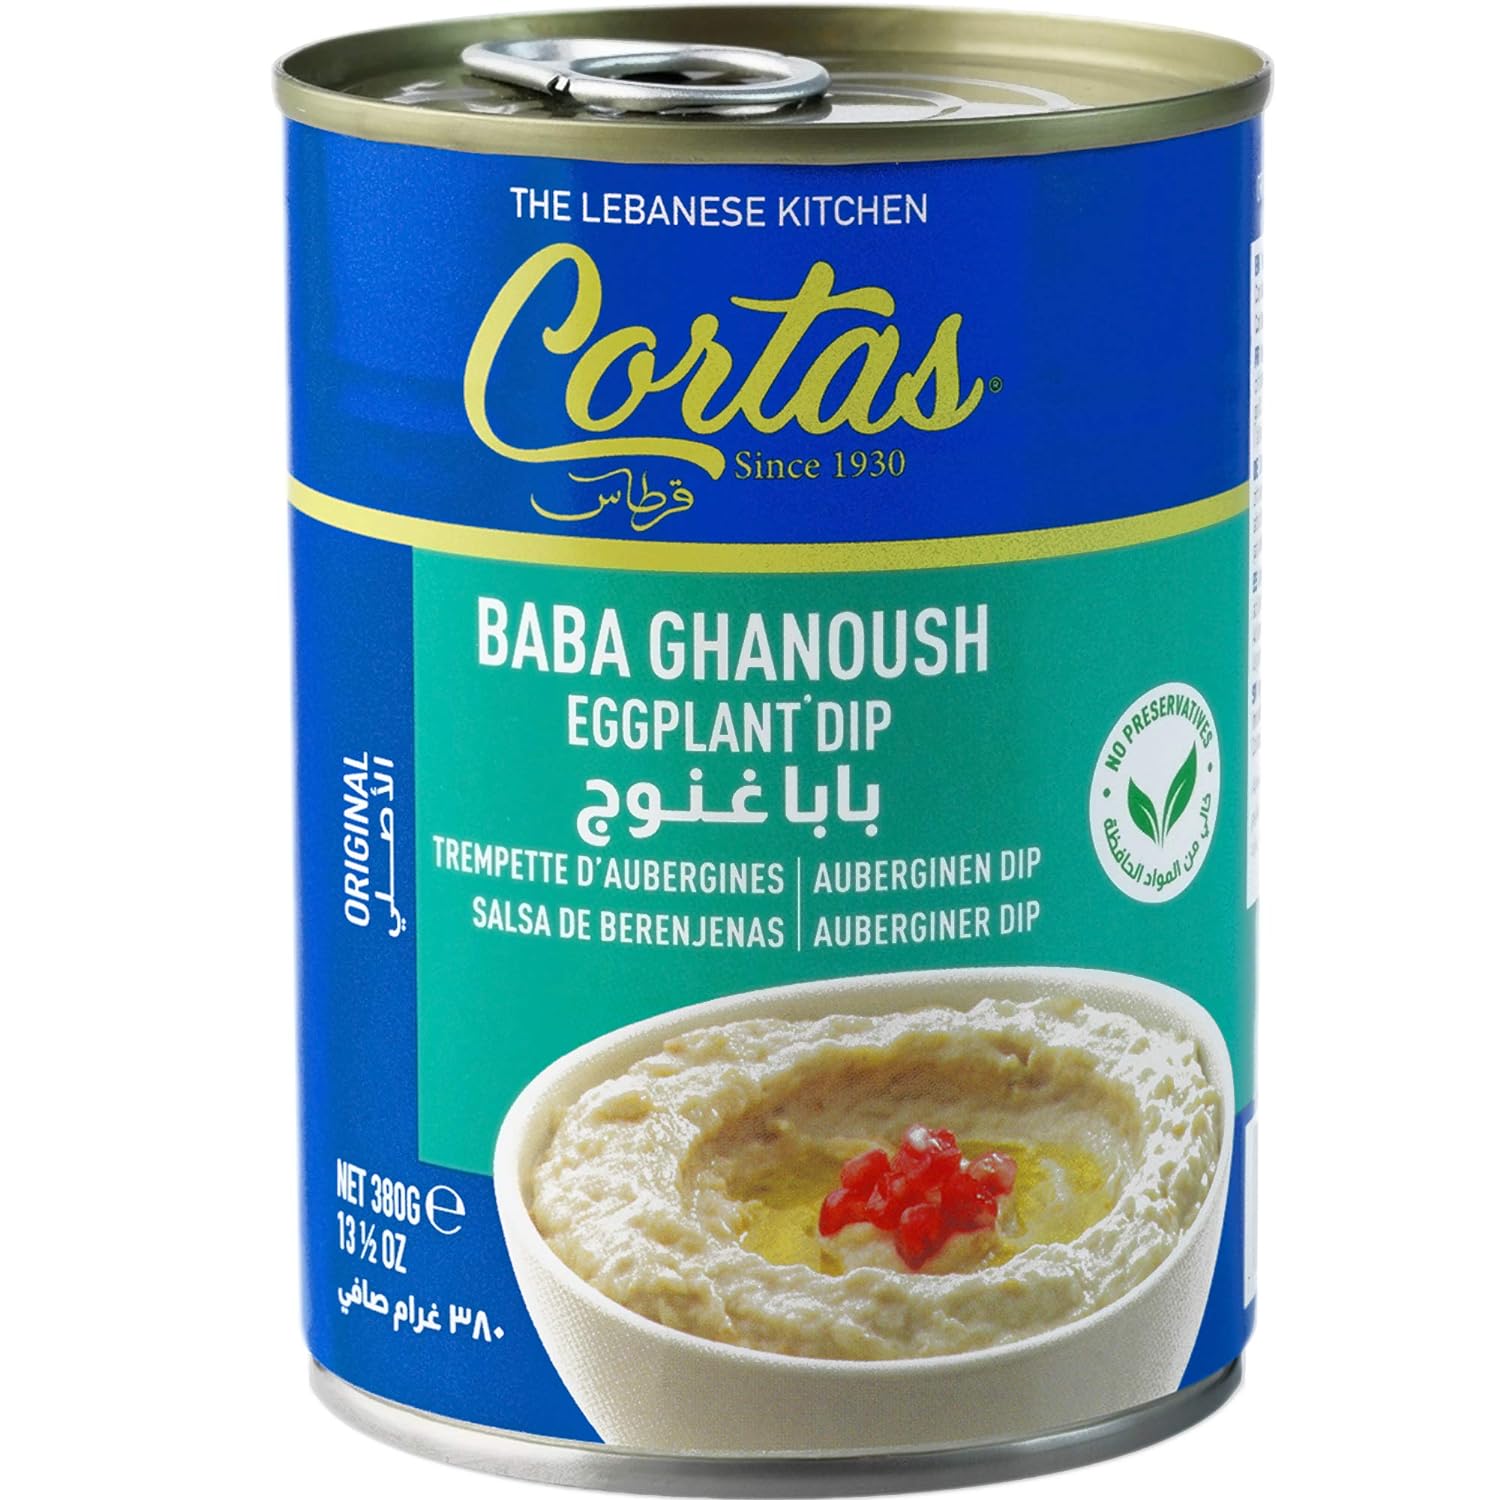 【6 Pack】Cortas Baba Ghanoush Eggplant Dip 13 oz - Mideast Grocers